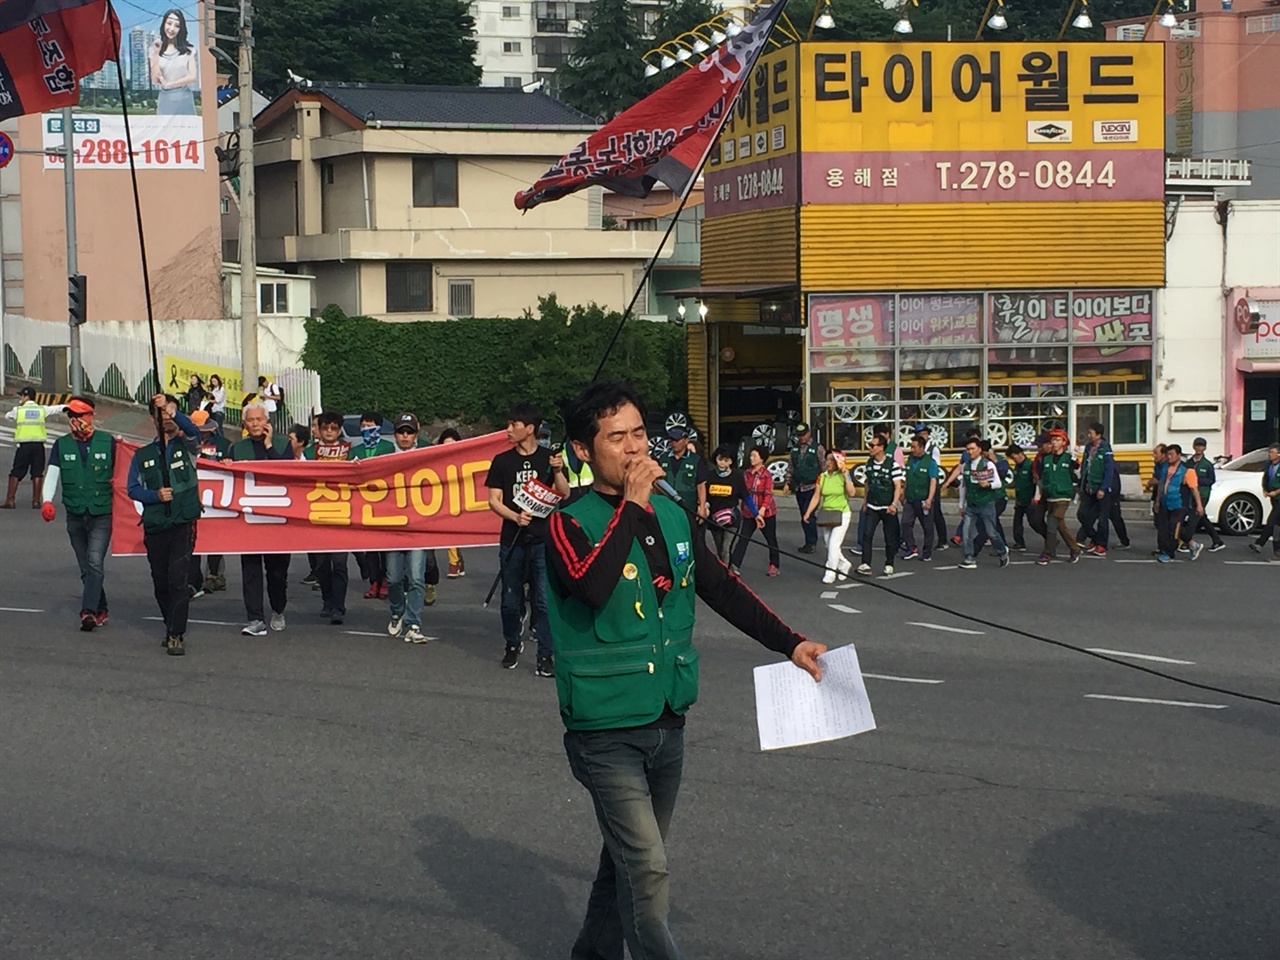 200~ 250여명이 집회와 행진을 진행중이다.